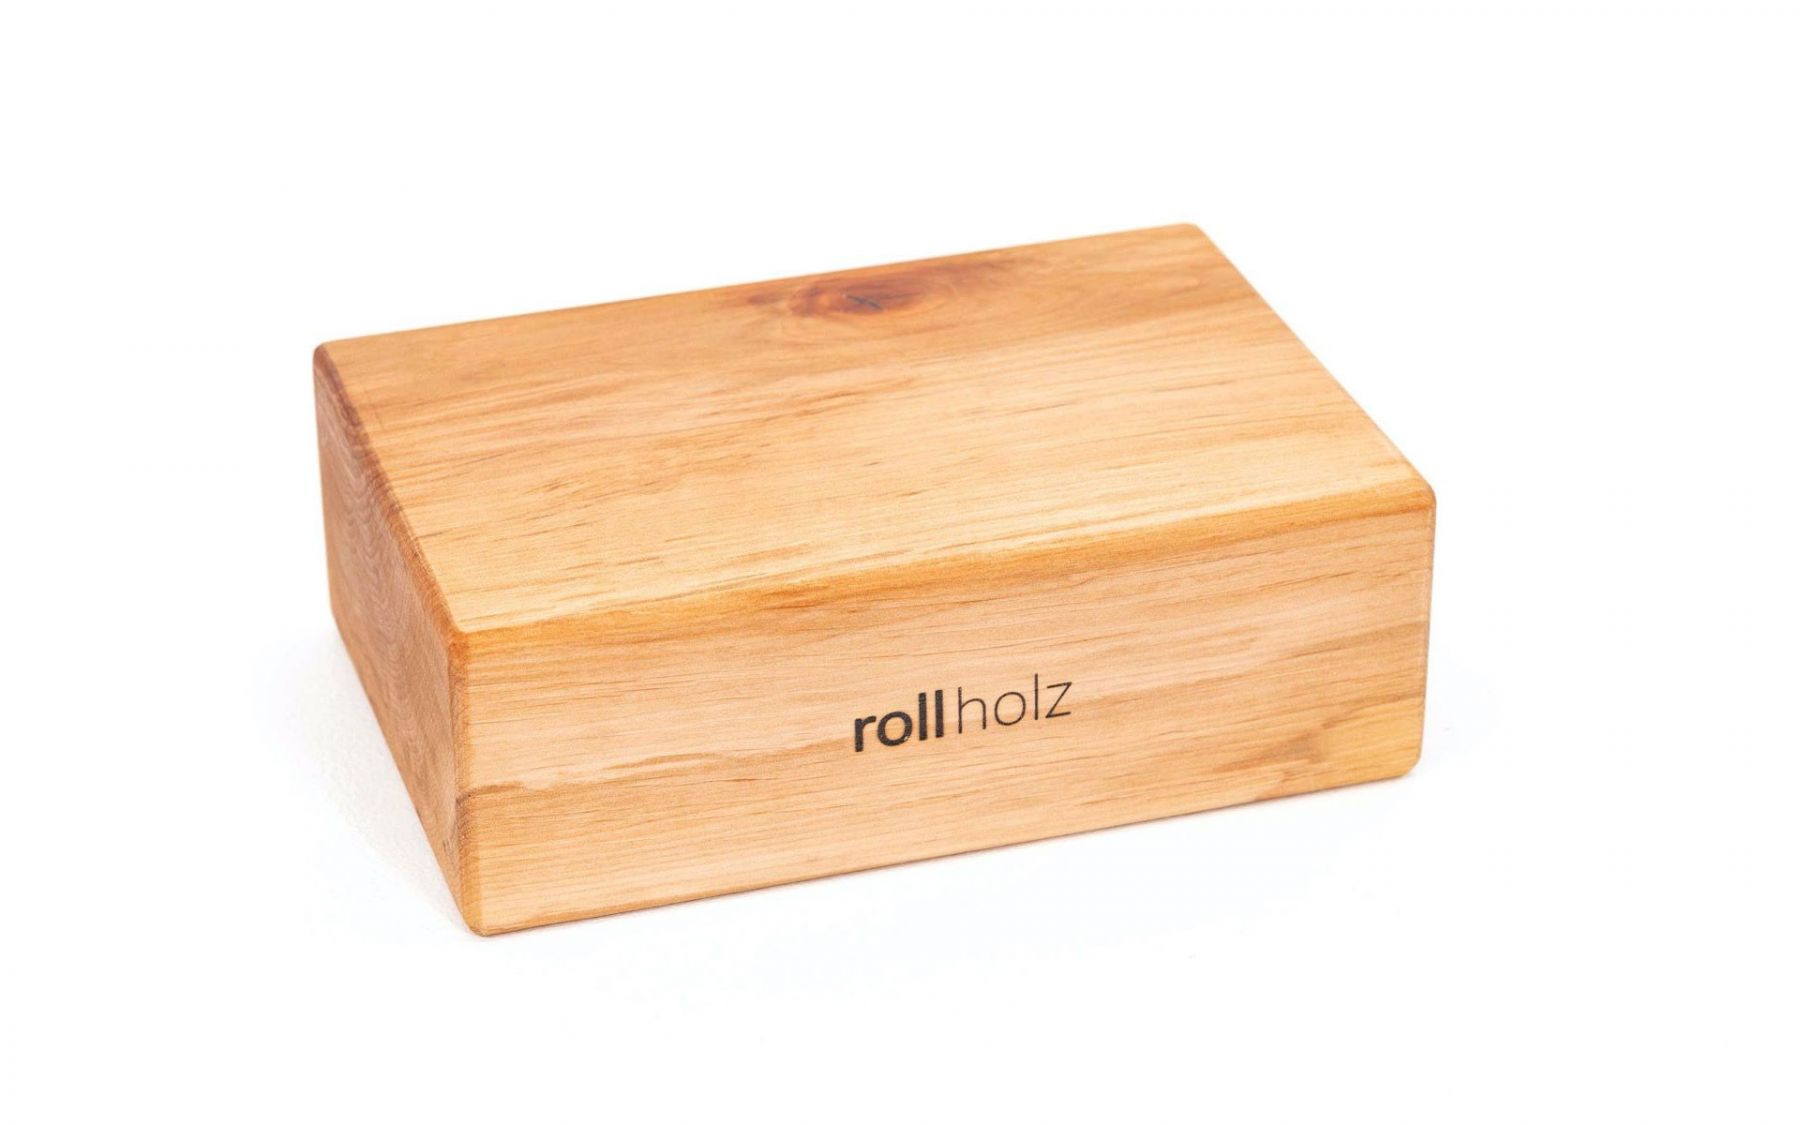 rollholz yogablock